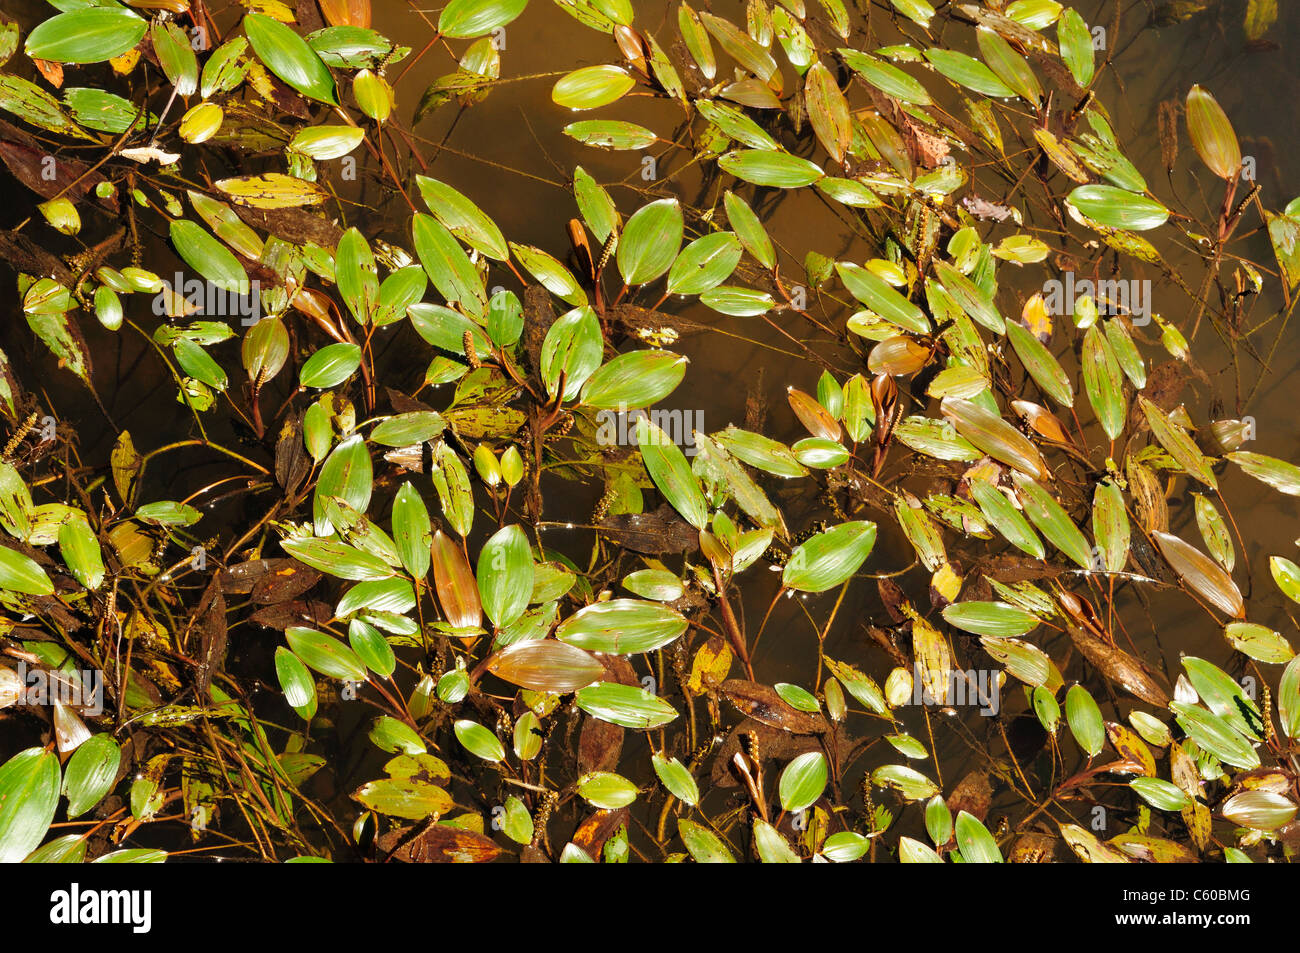 Bog Pondweed (Potamogeton polygonifolius) Stock Photo